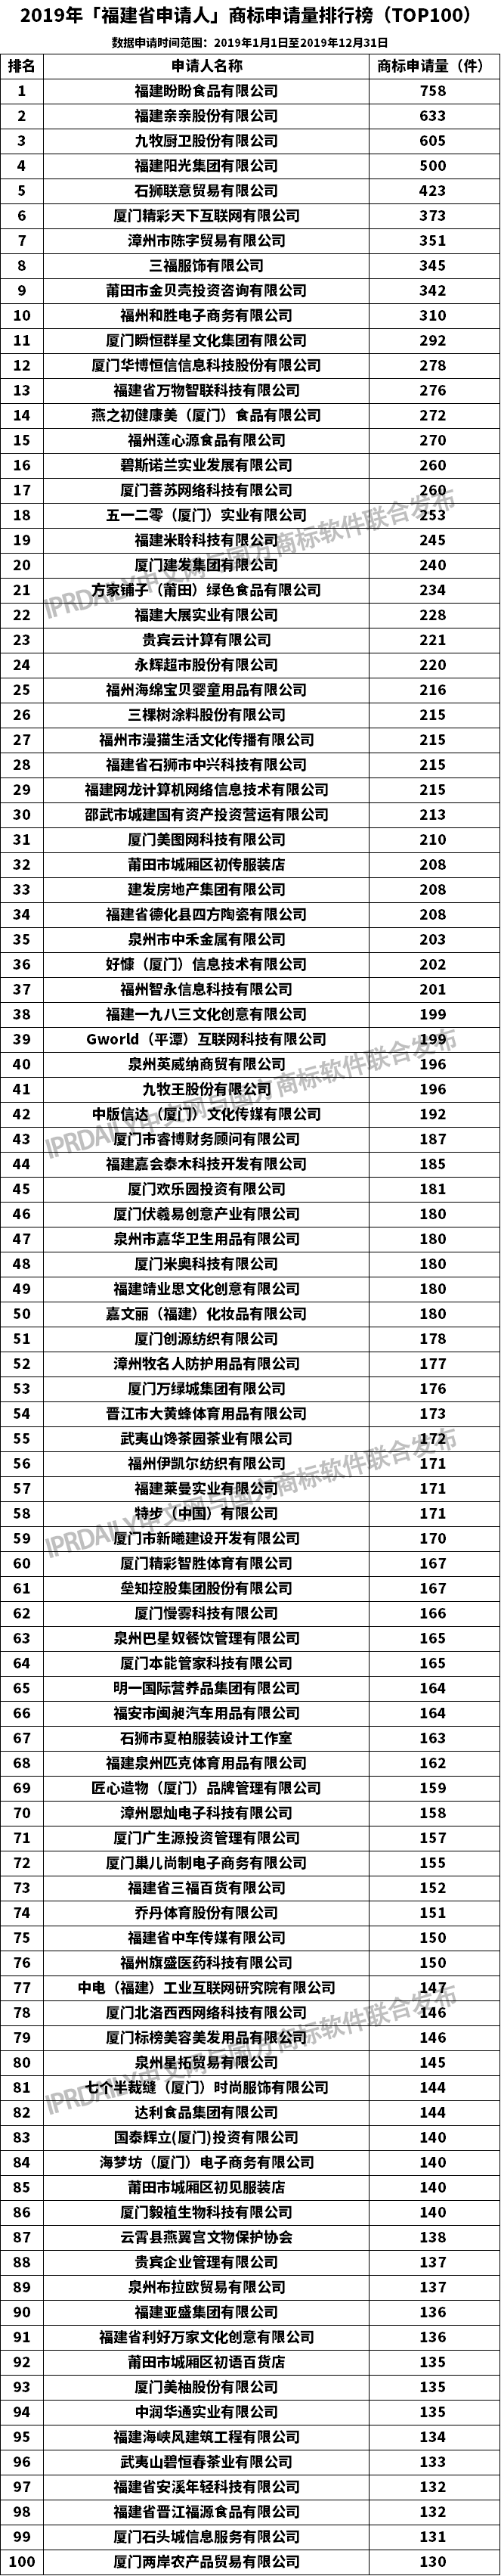 2019年「福建省申请人」商标申请量排行榜（TOP100）